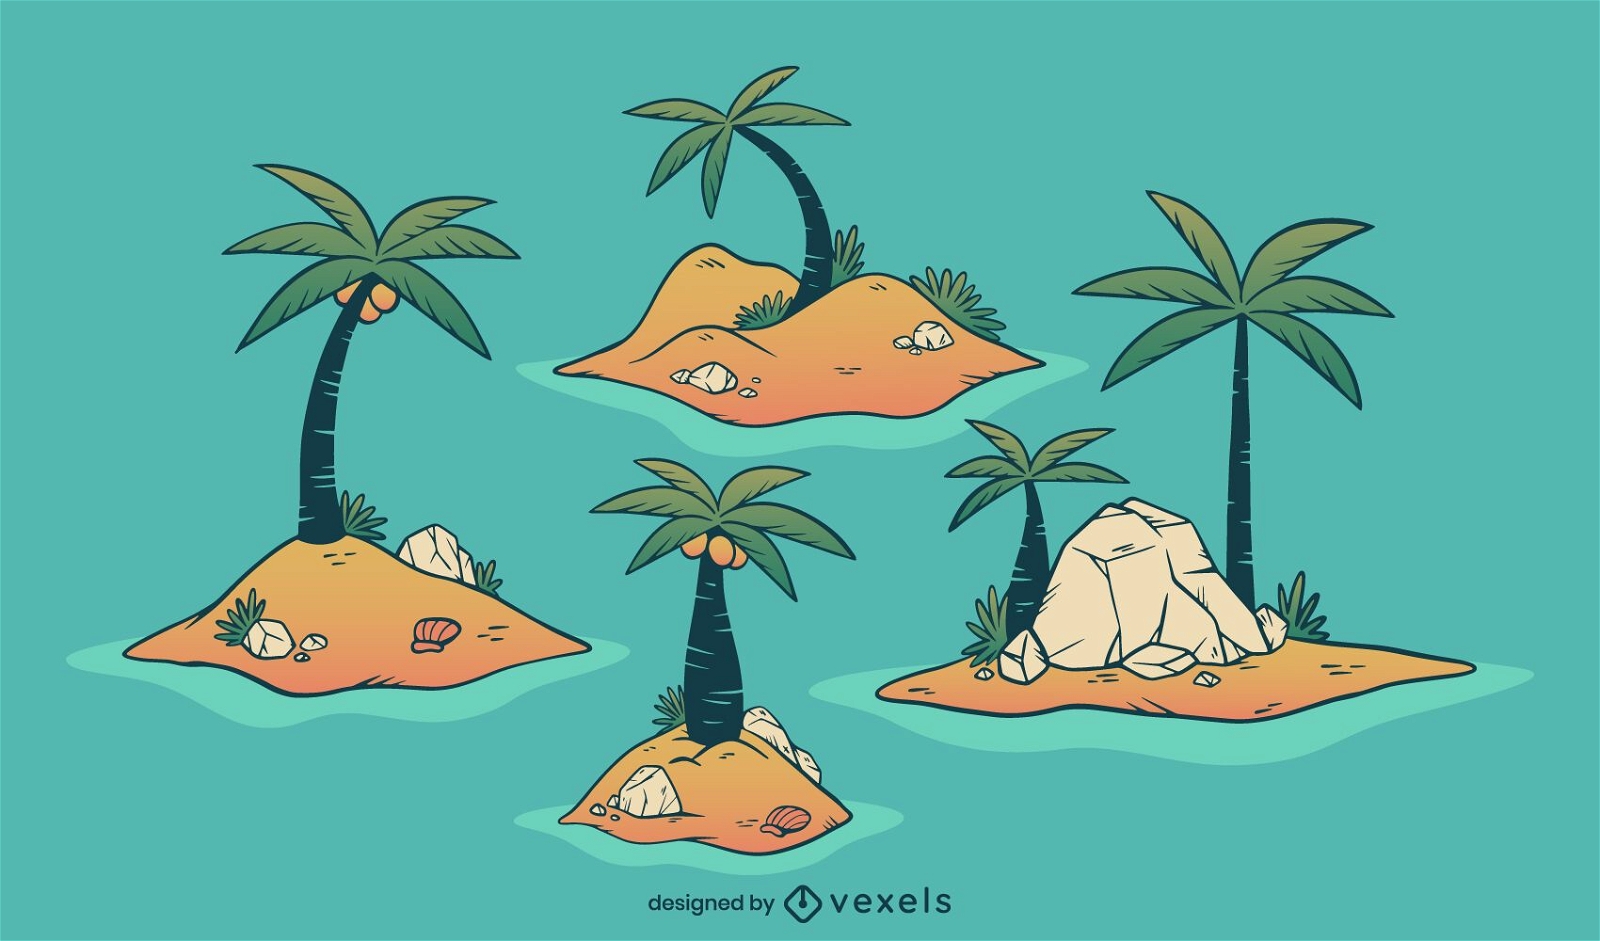 Island Illustration Design Pack